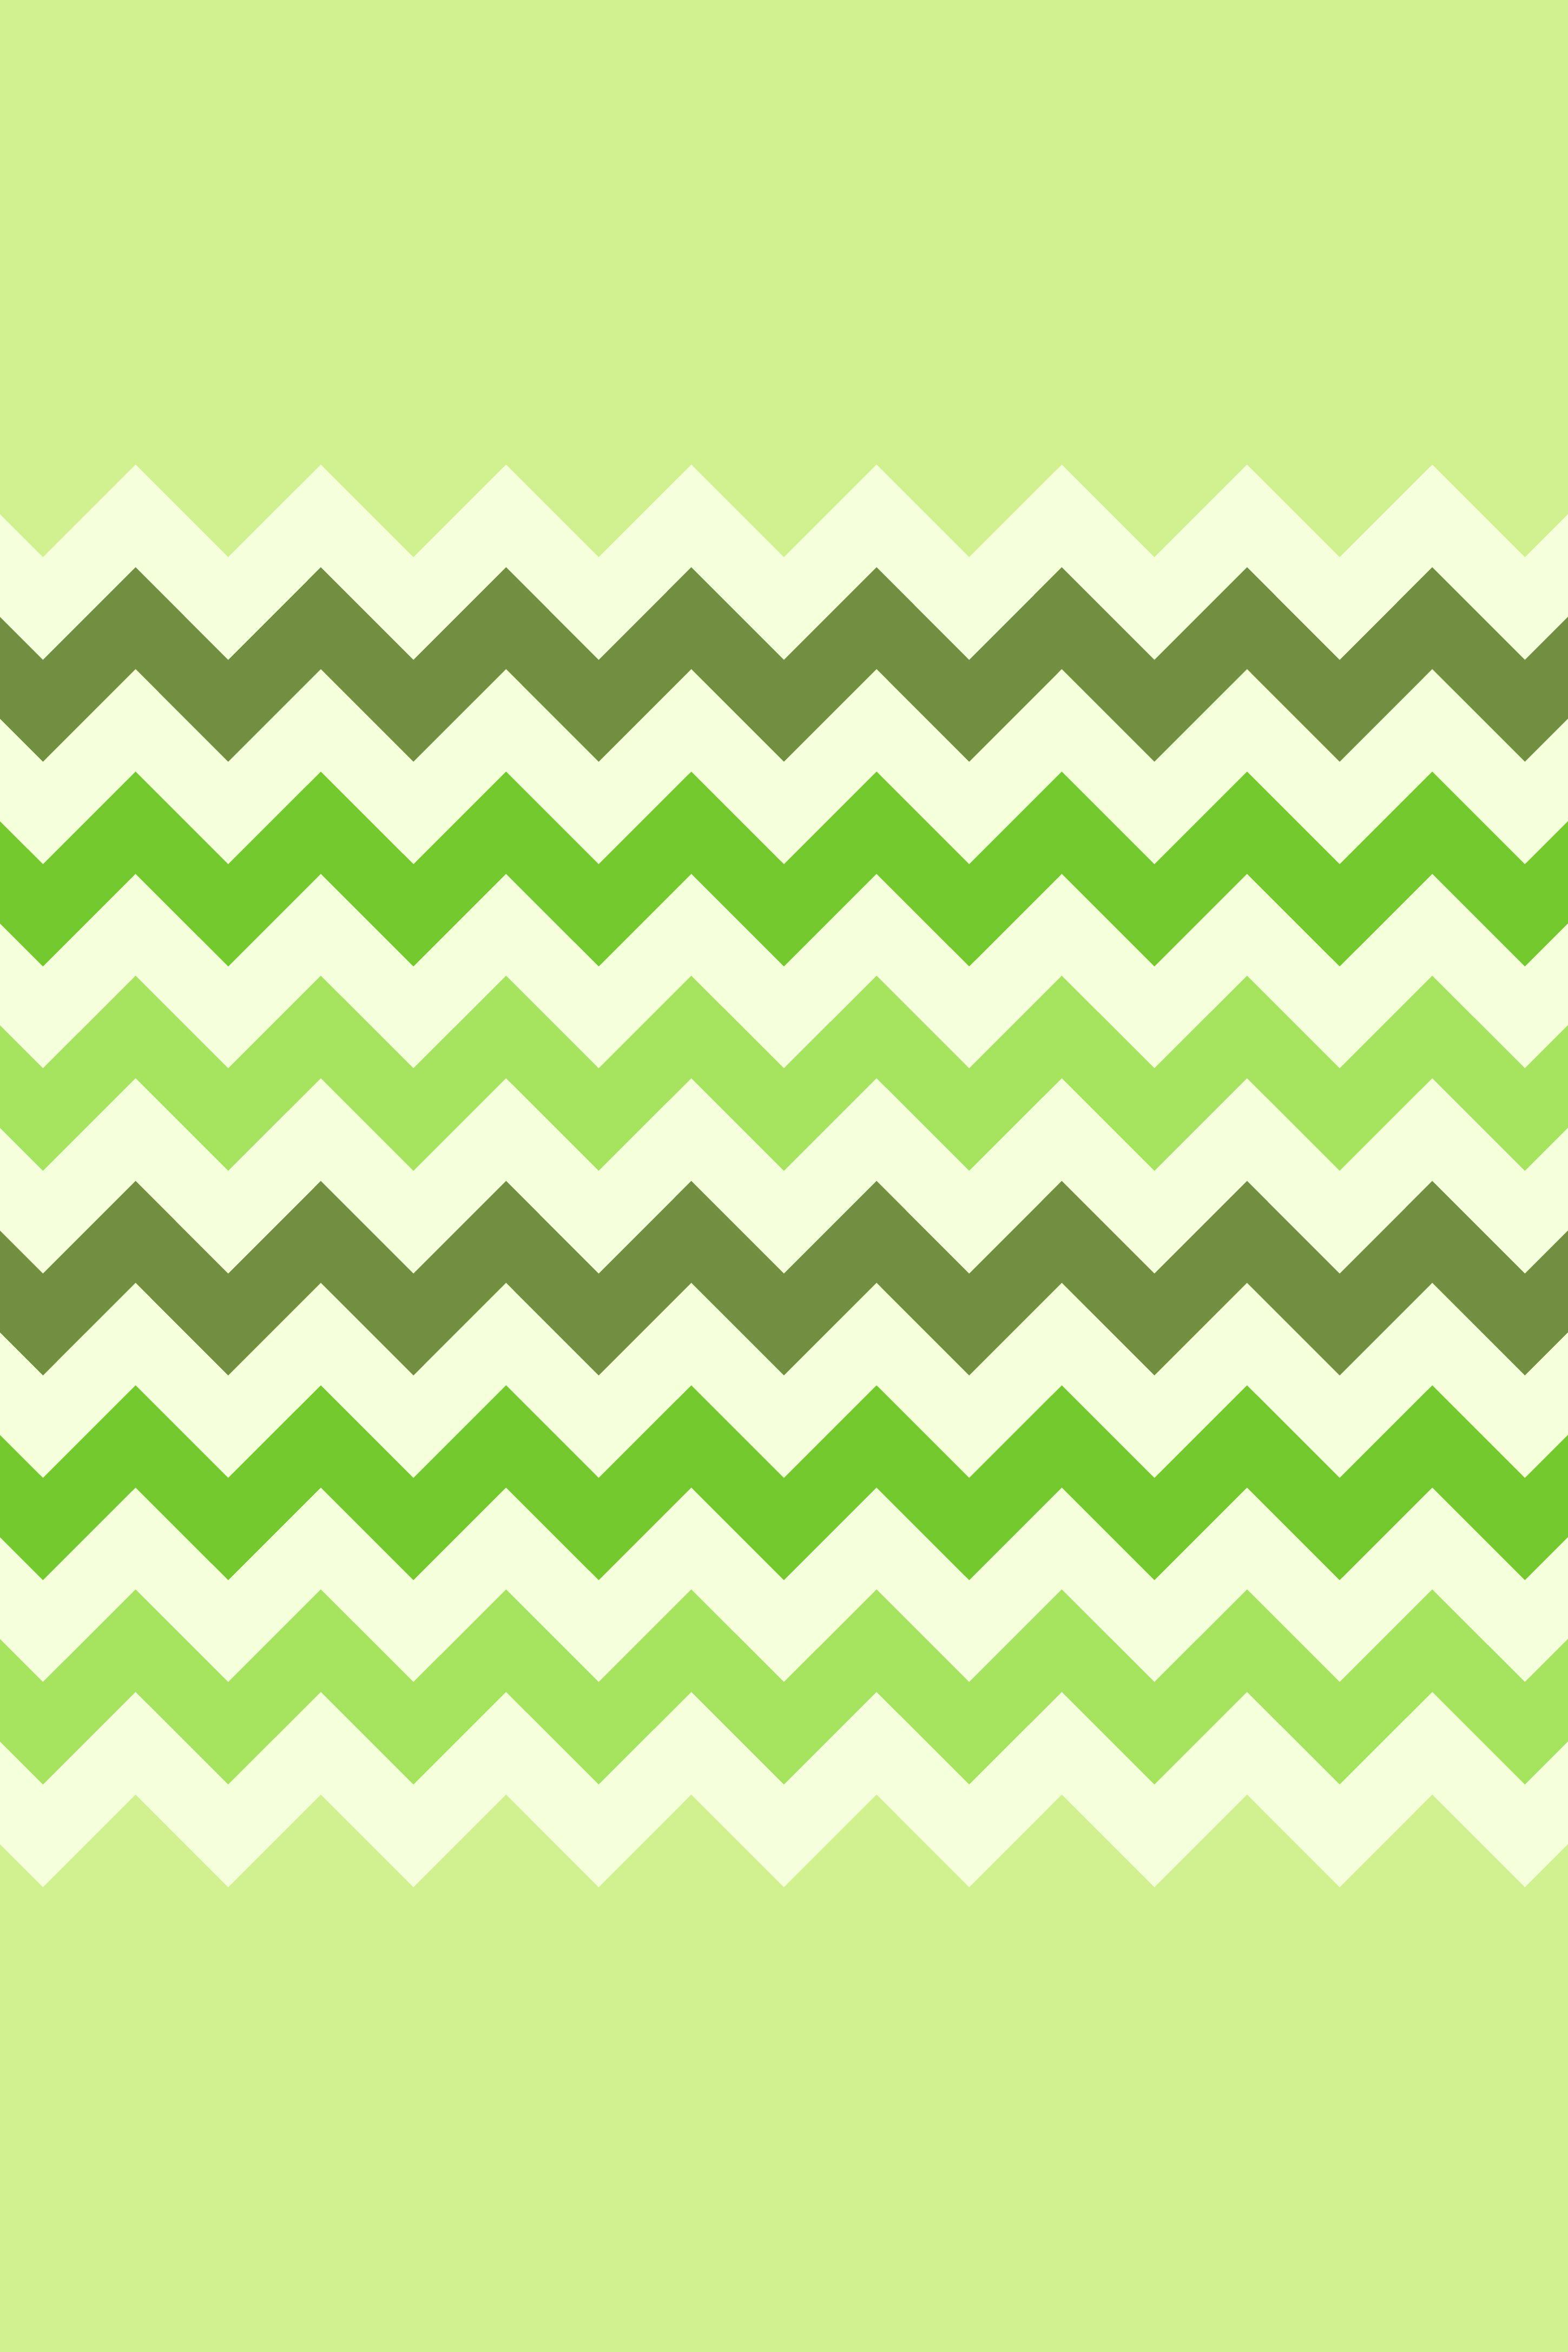 Cute Green Wallpapers - Top Những Hình Ảnh Đẹp